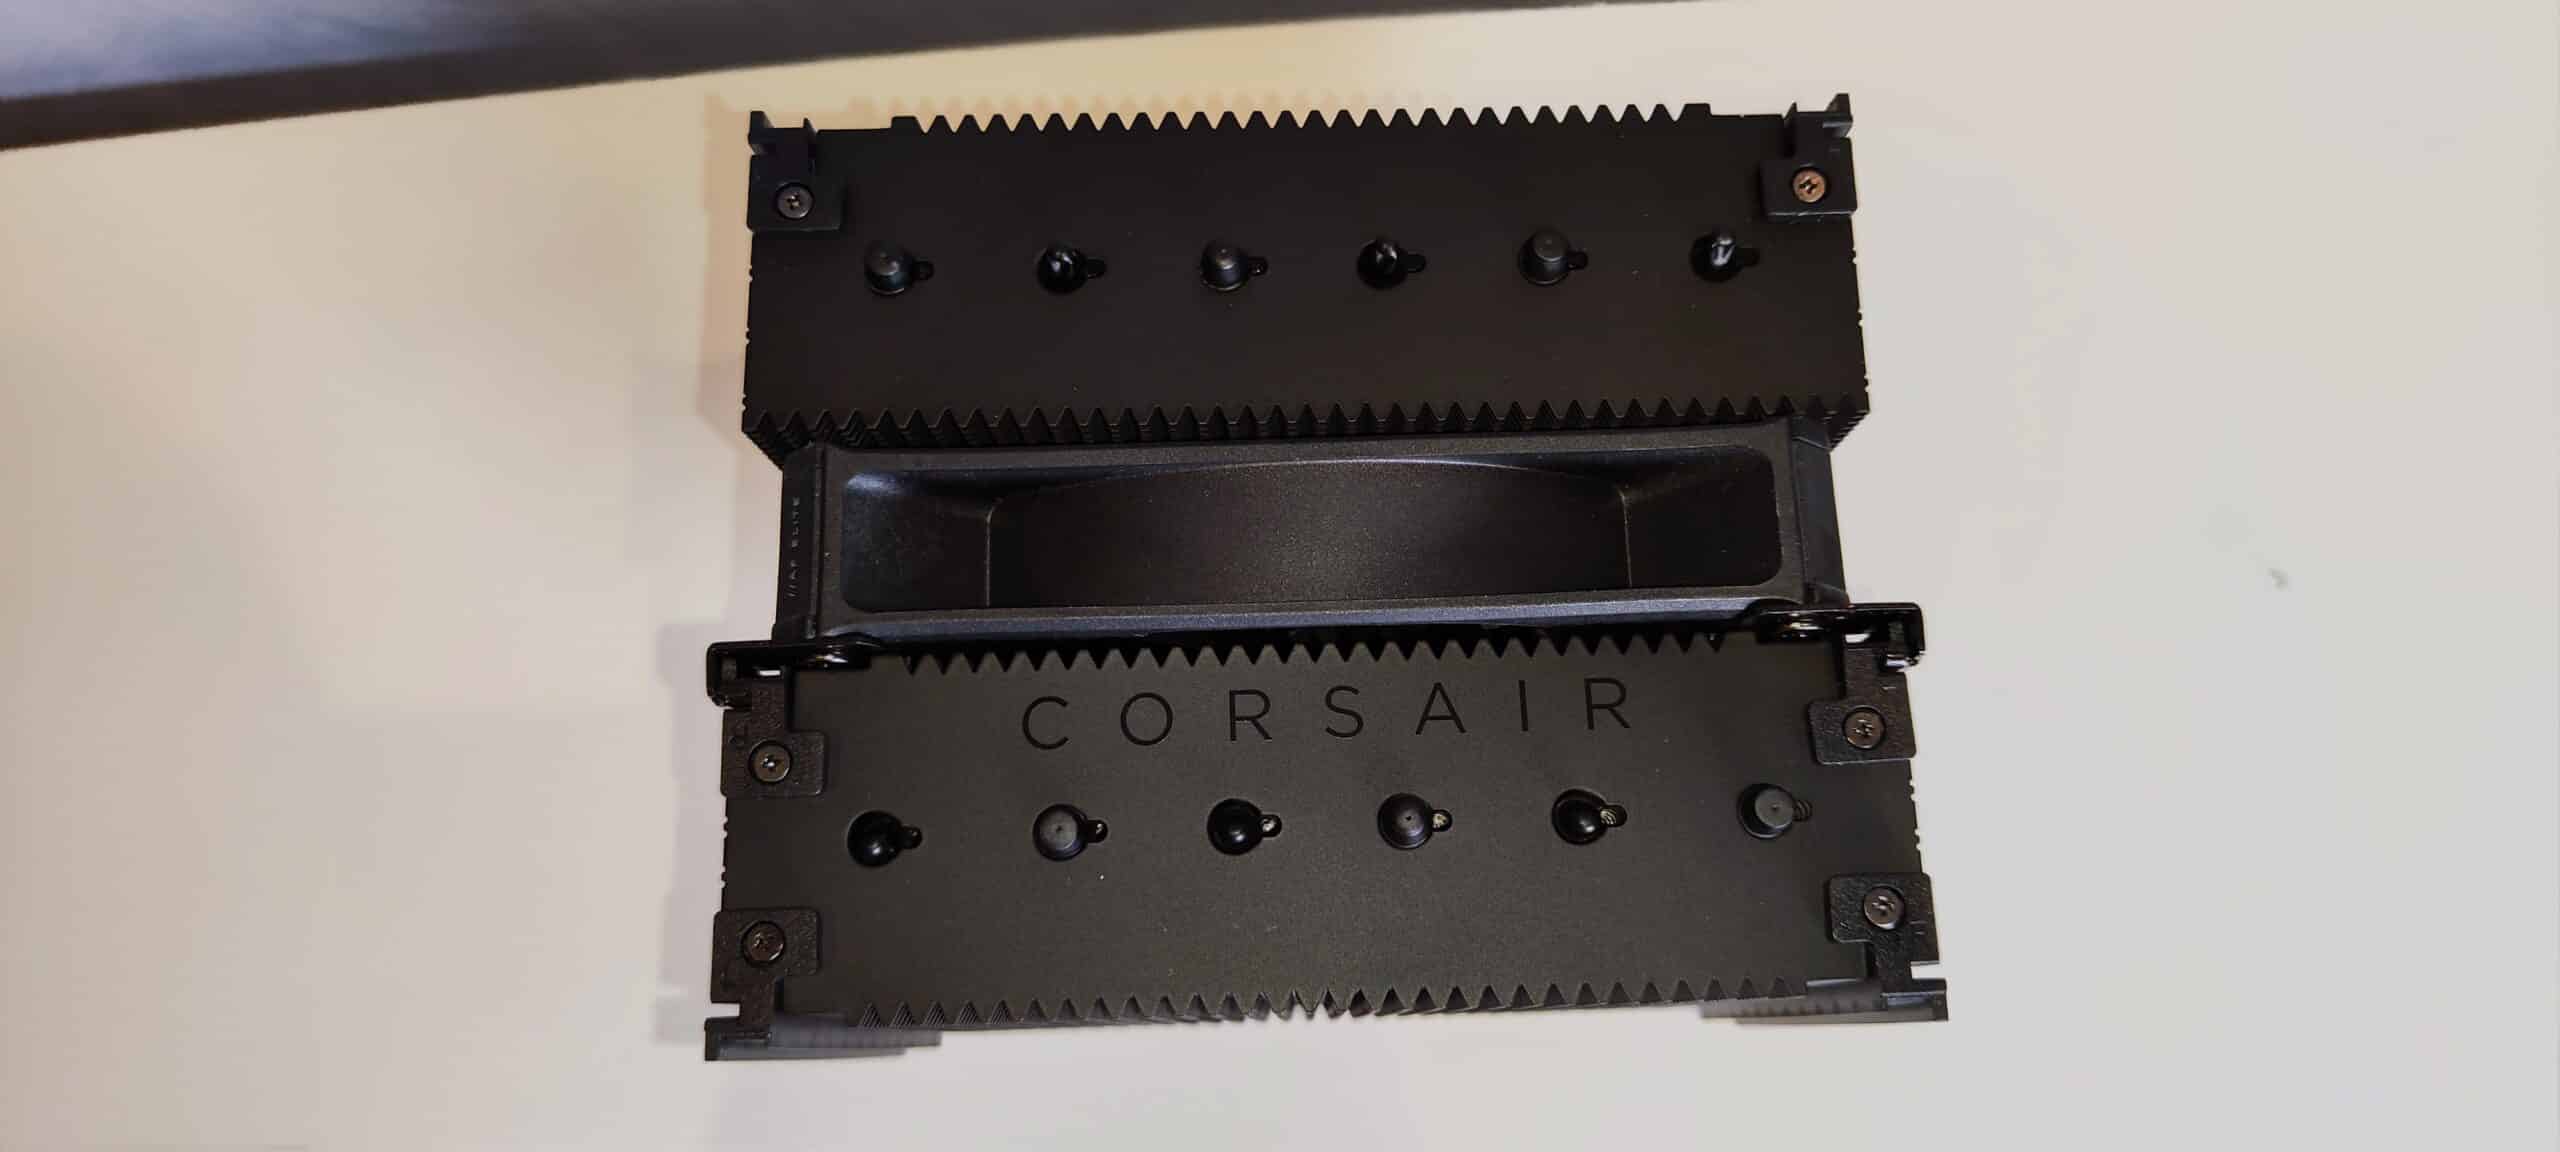 Corsair A115 12 scaled